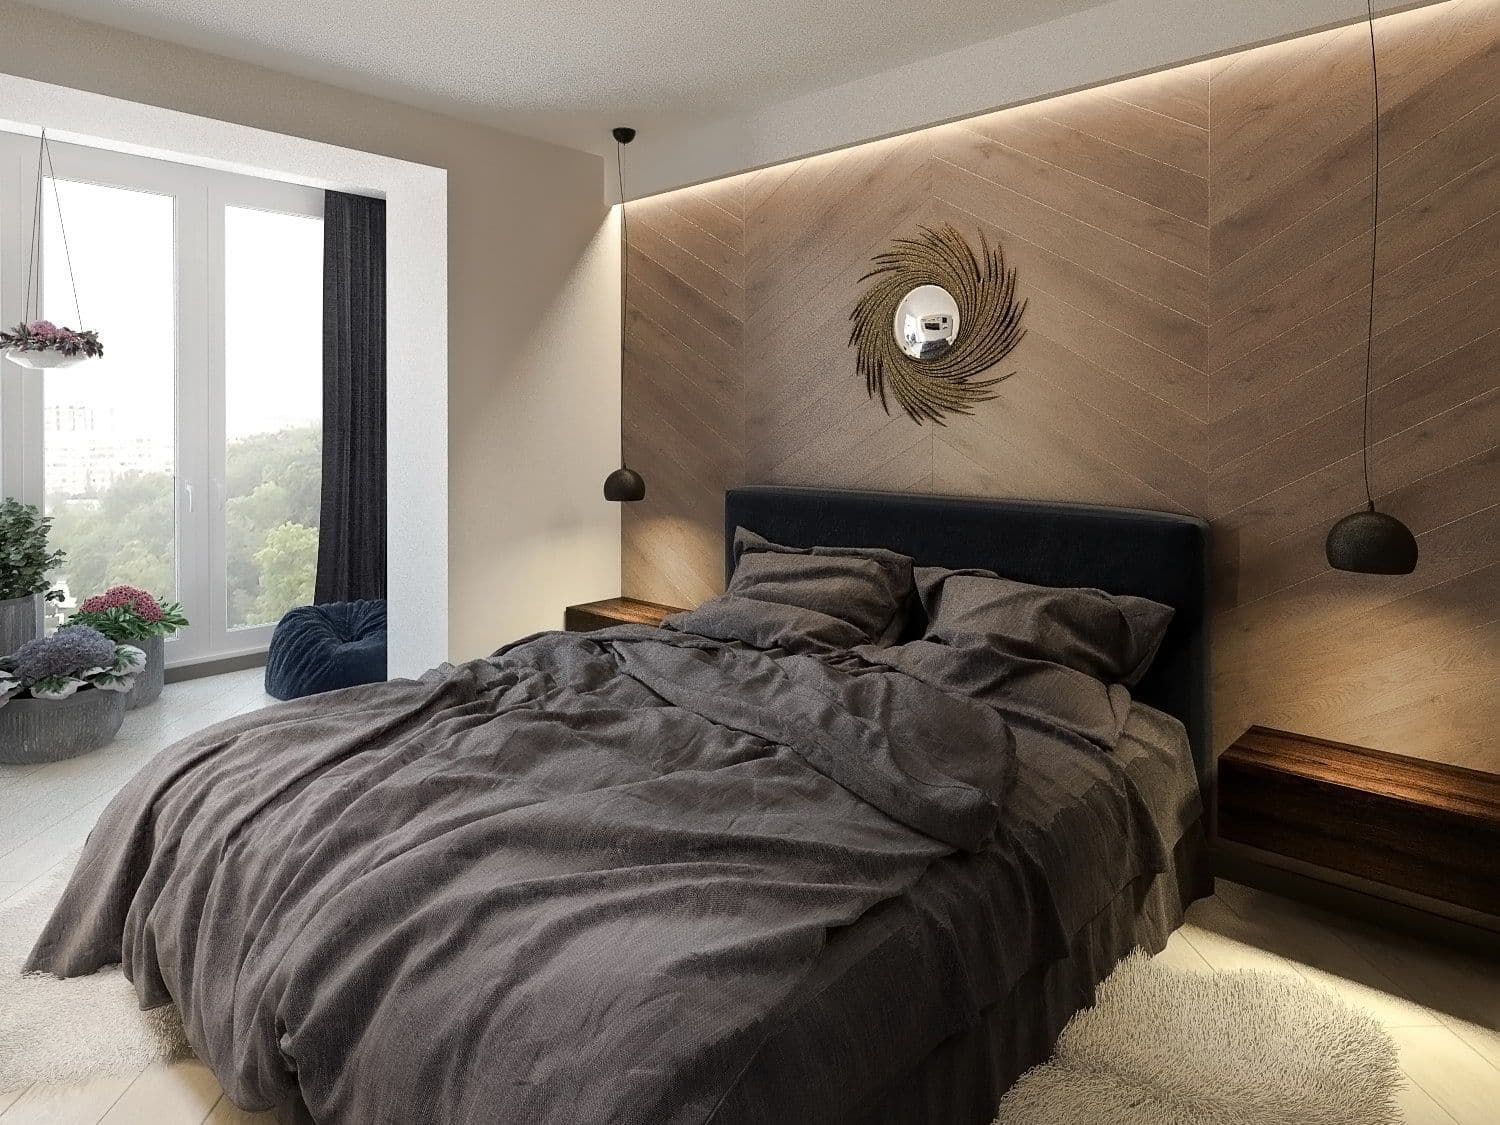 Дизайн интерьера спальни с деревянным панно в изголовье, темно синей кроватью в современном стиле в коричнево бежевых оттенках, с объединенной лоджией